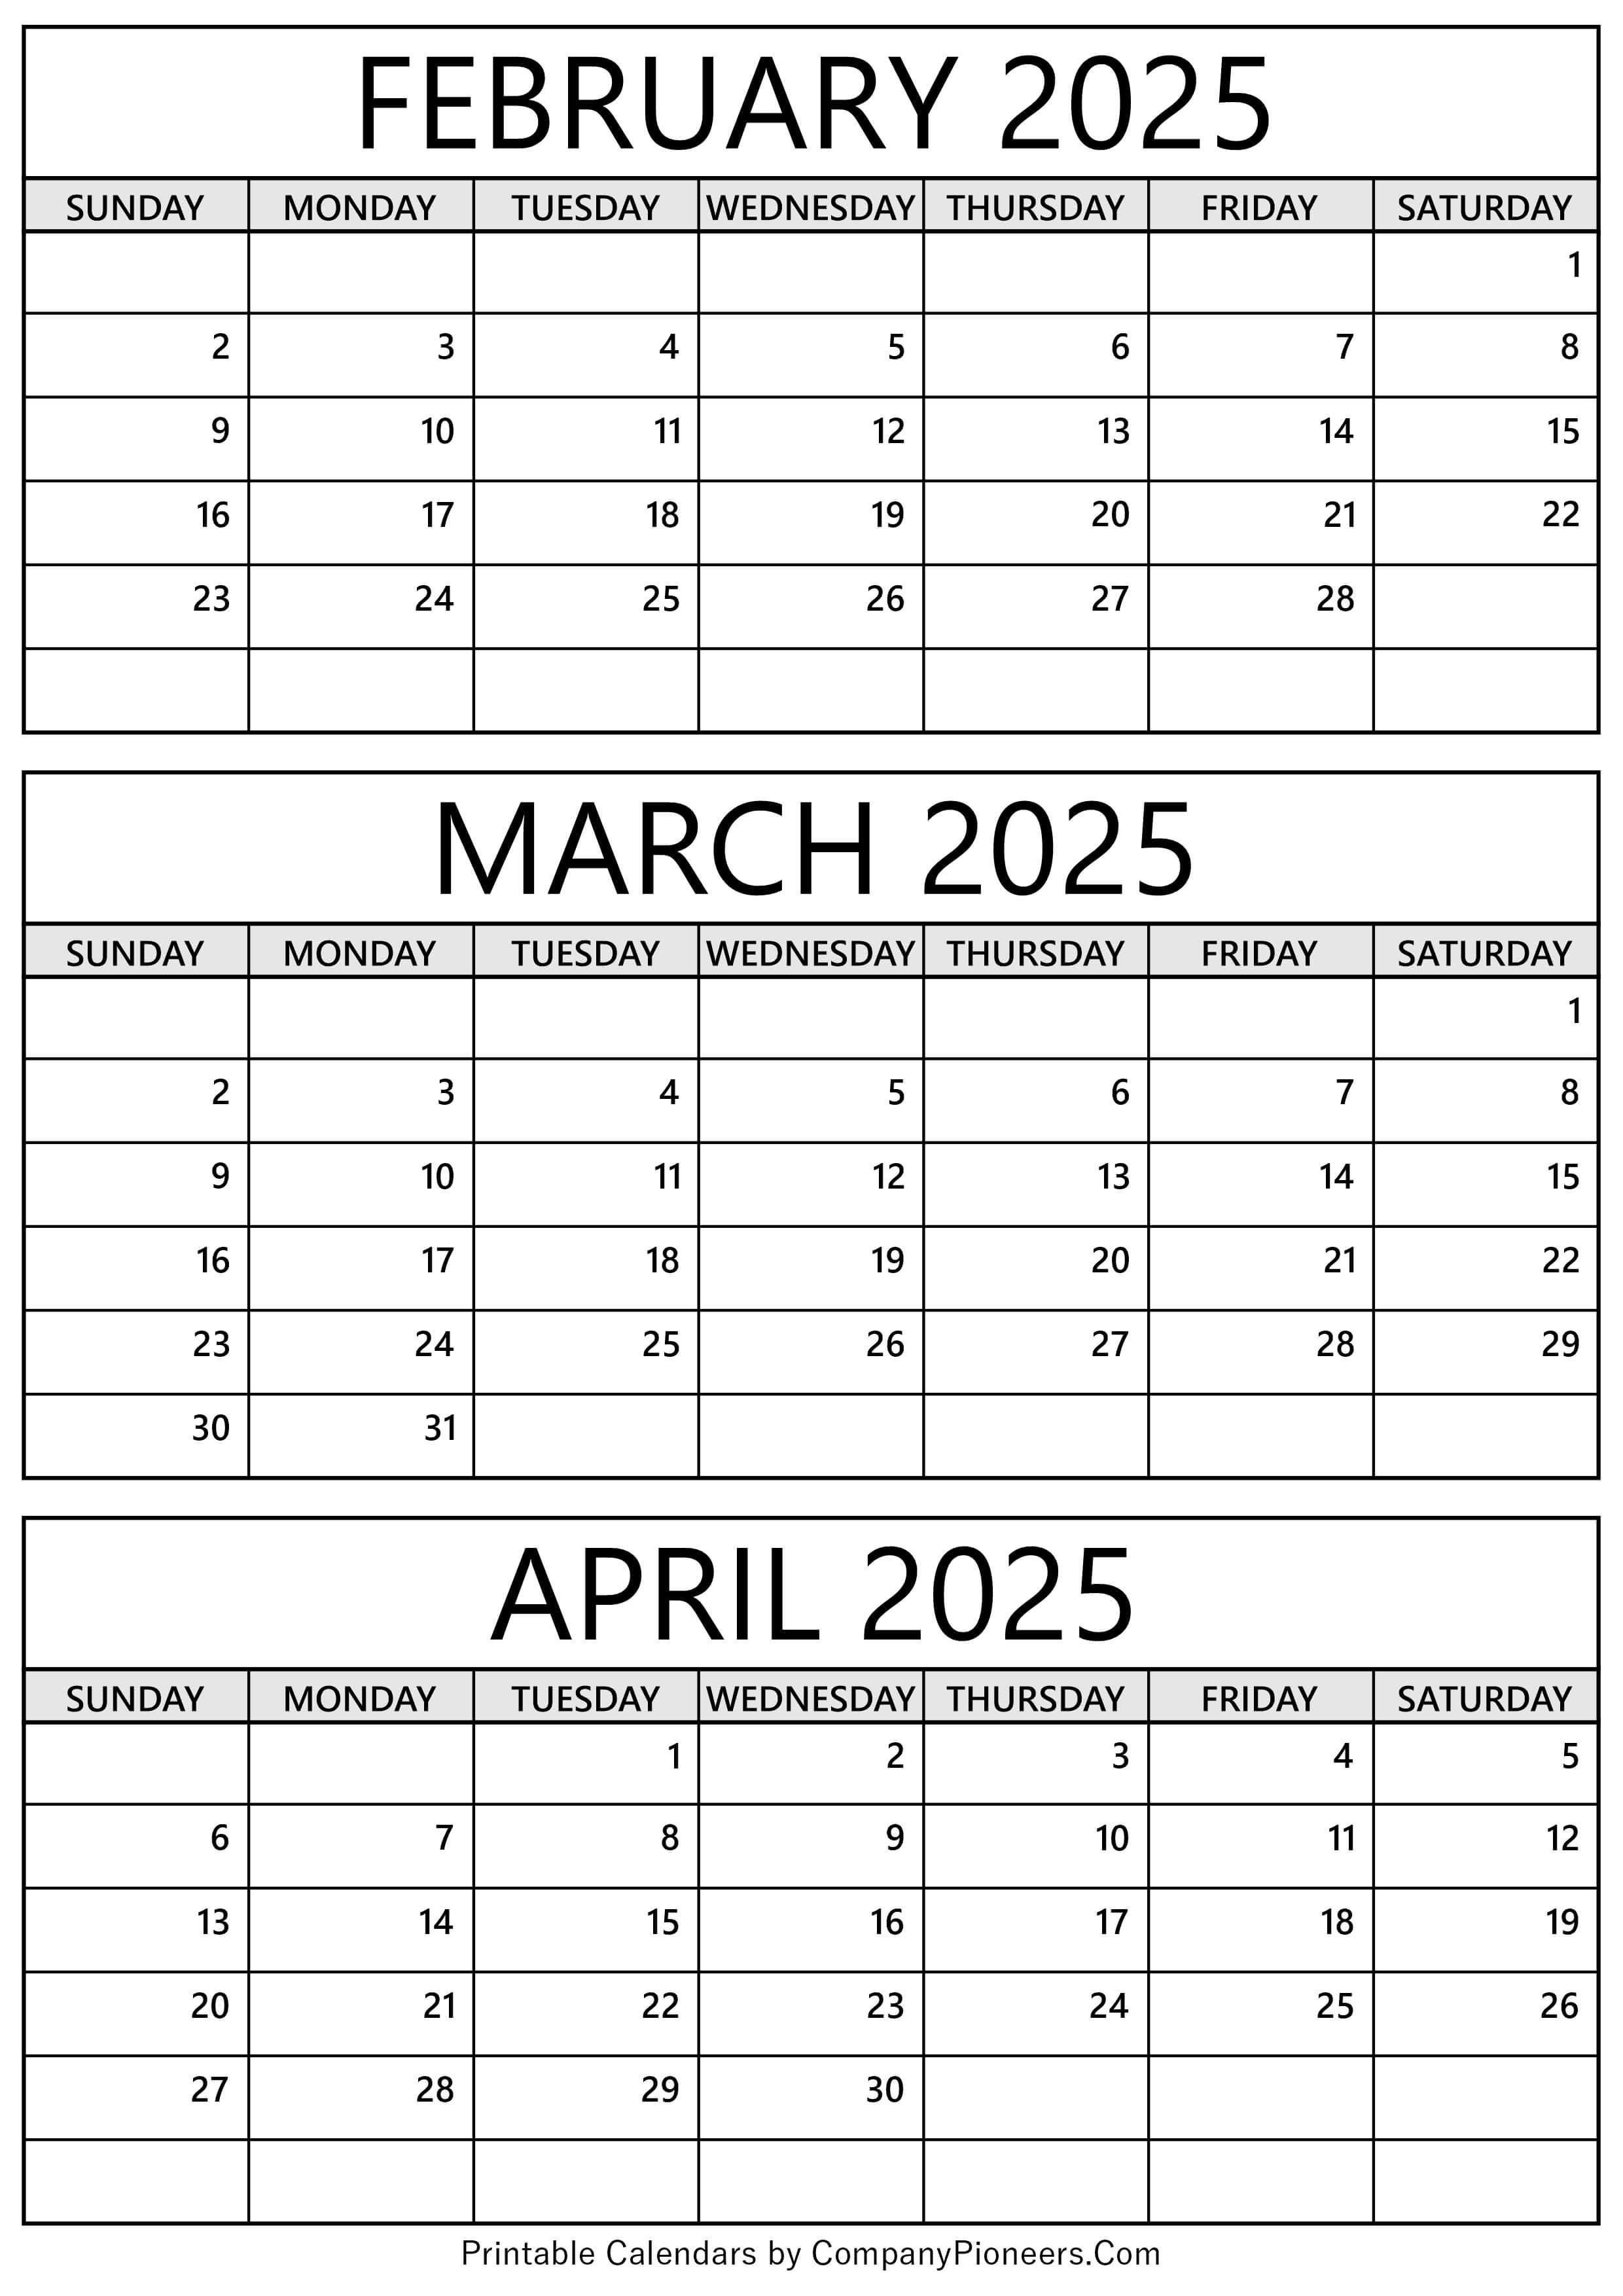 February to April 2025 Calendar